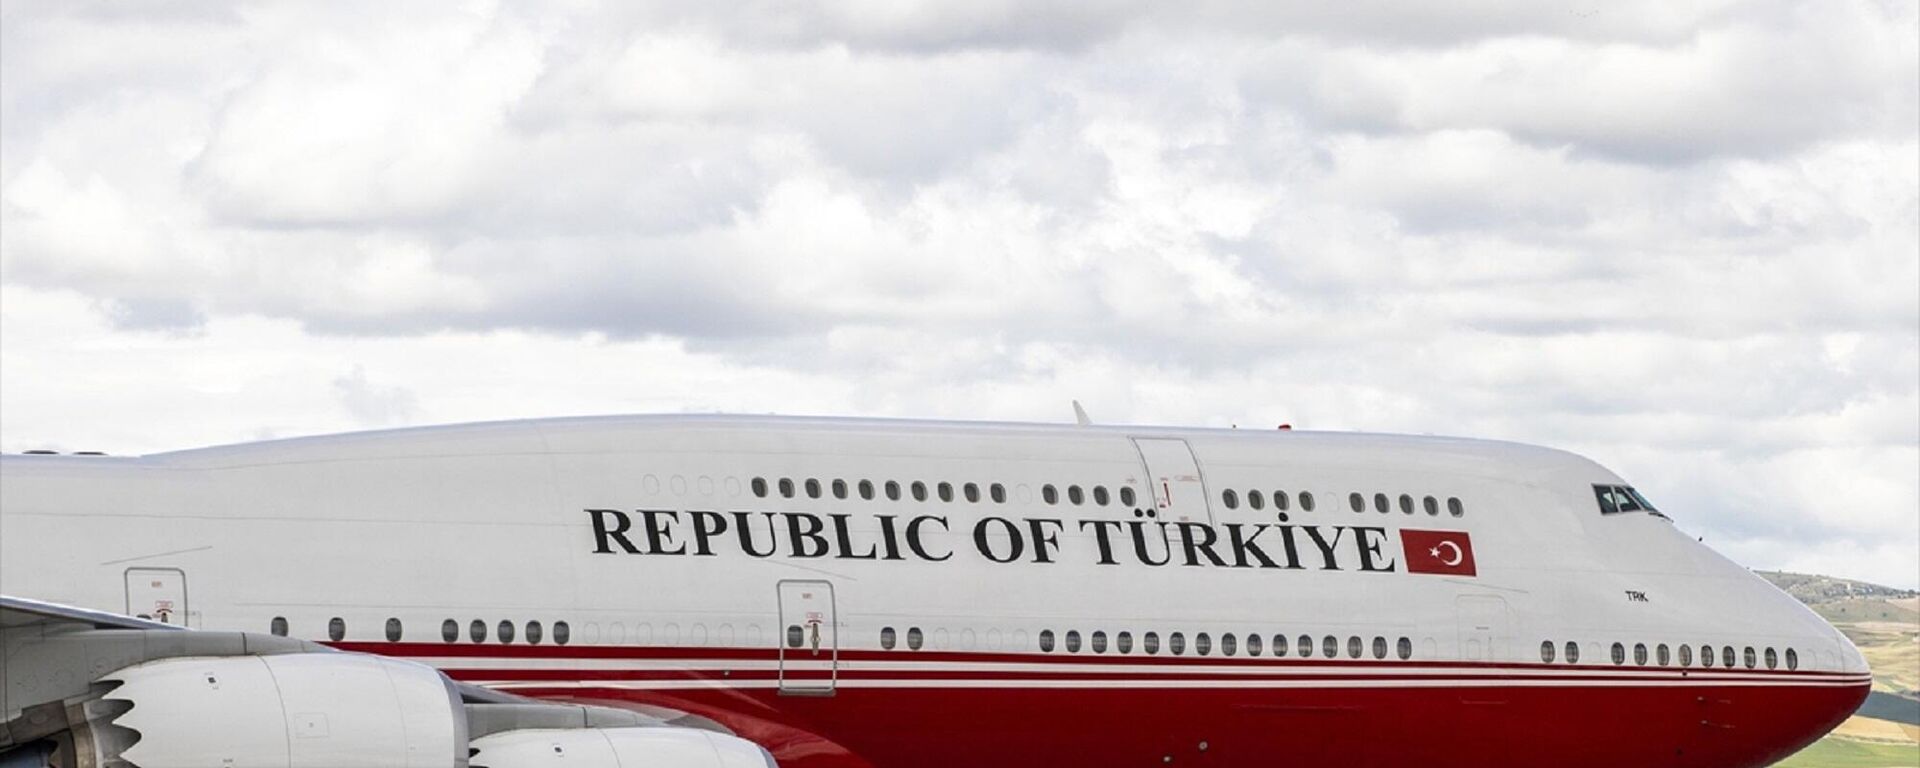 Cumhurbaşkanı Erdoğan'ın bulunduğu uçaktaki Republic of Turkey yazısının Republic of Türkiye olarak değiştirildiği görüldü.  - Sputnik Türkiye, 1920, 28.06.2022